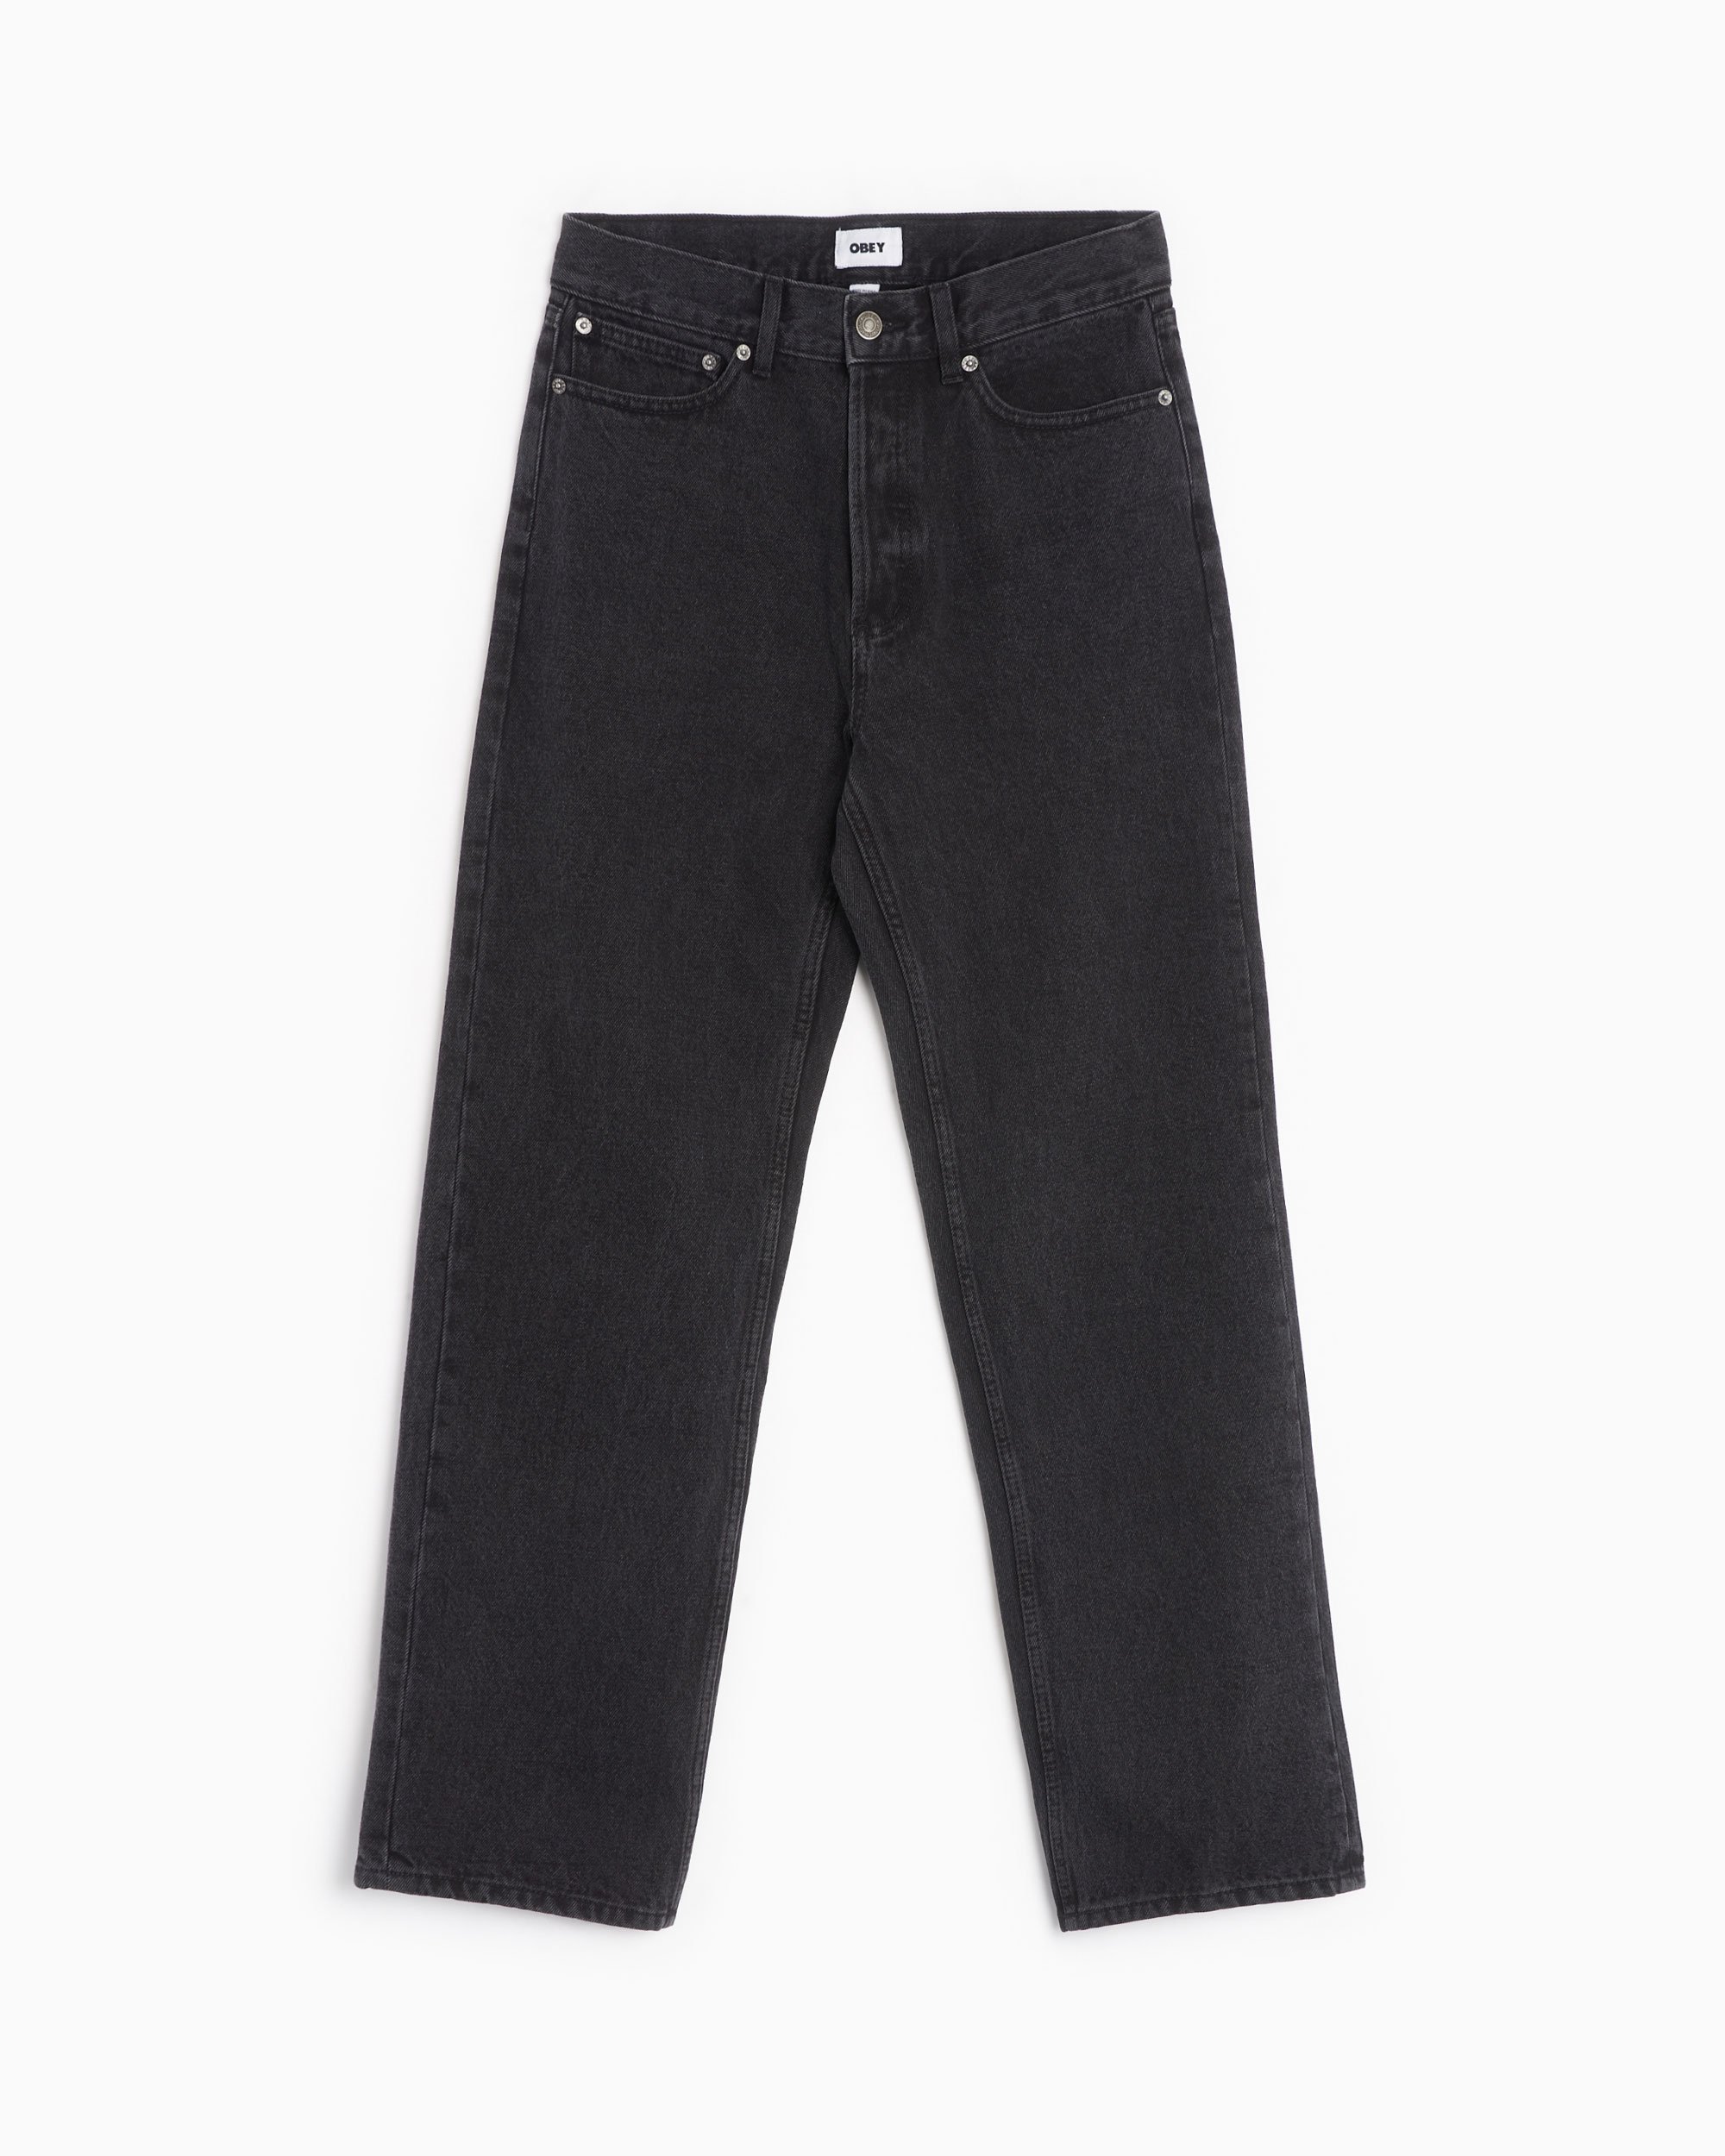 OBEY Clothing Hardwork Men's Denim Pants Black 142010077-FBL 